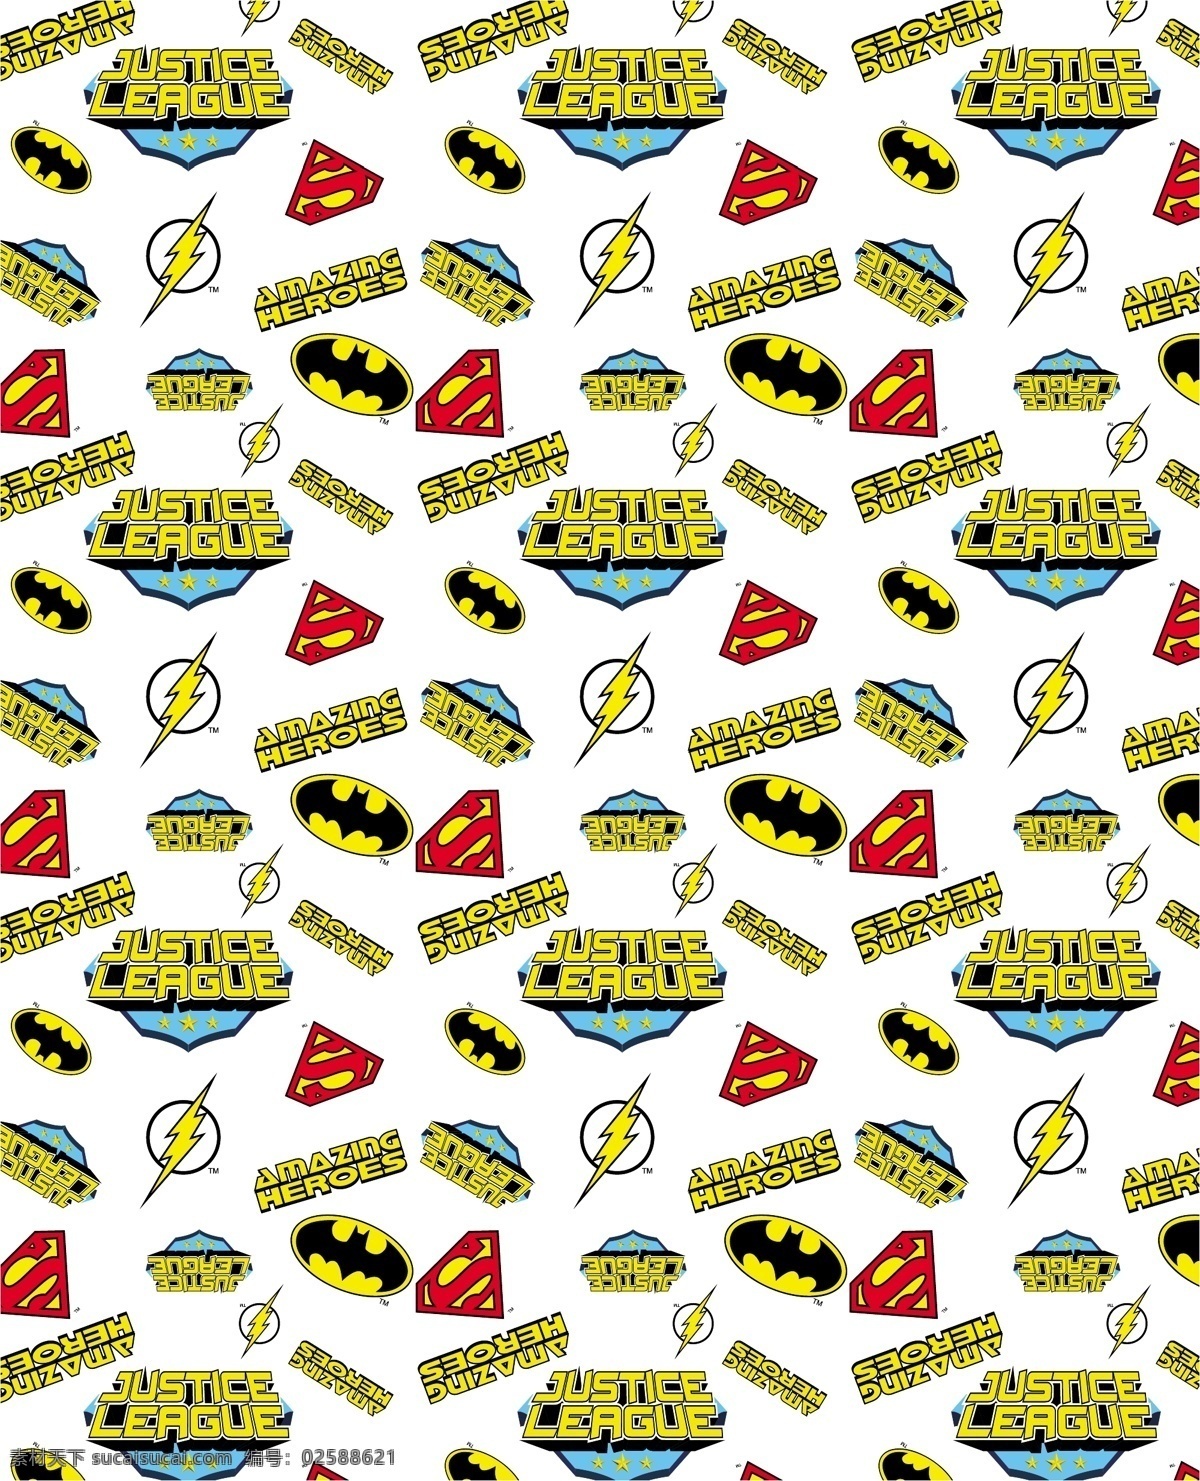 flash superman 蝙蝠侠 标志 超人 服装印花 卡通形象 其他人物 batman 闪电侠 华纳 dc漫画 超级英雄 英雄联盟 矢量人物 矢量 其他设计 网页素材